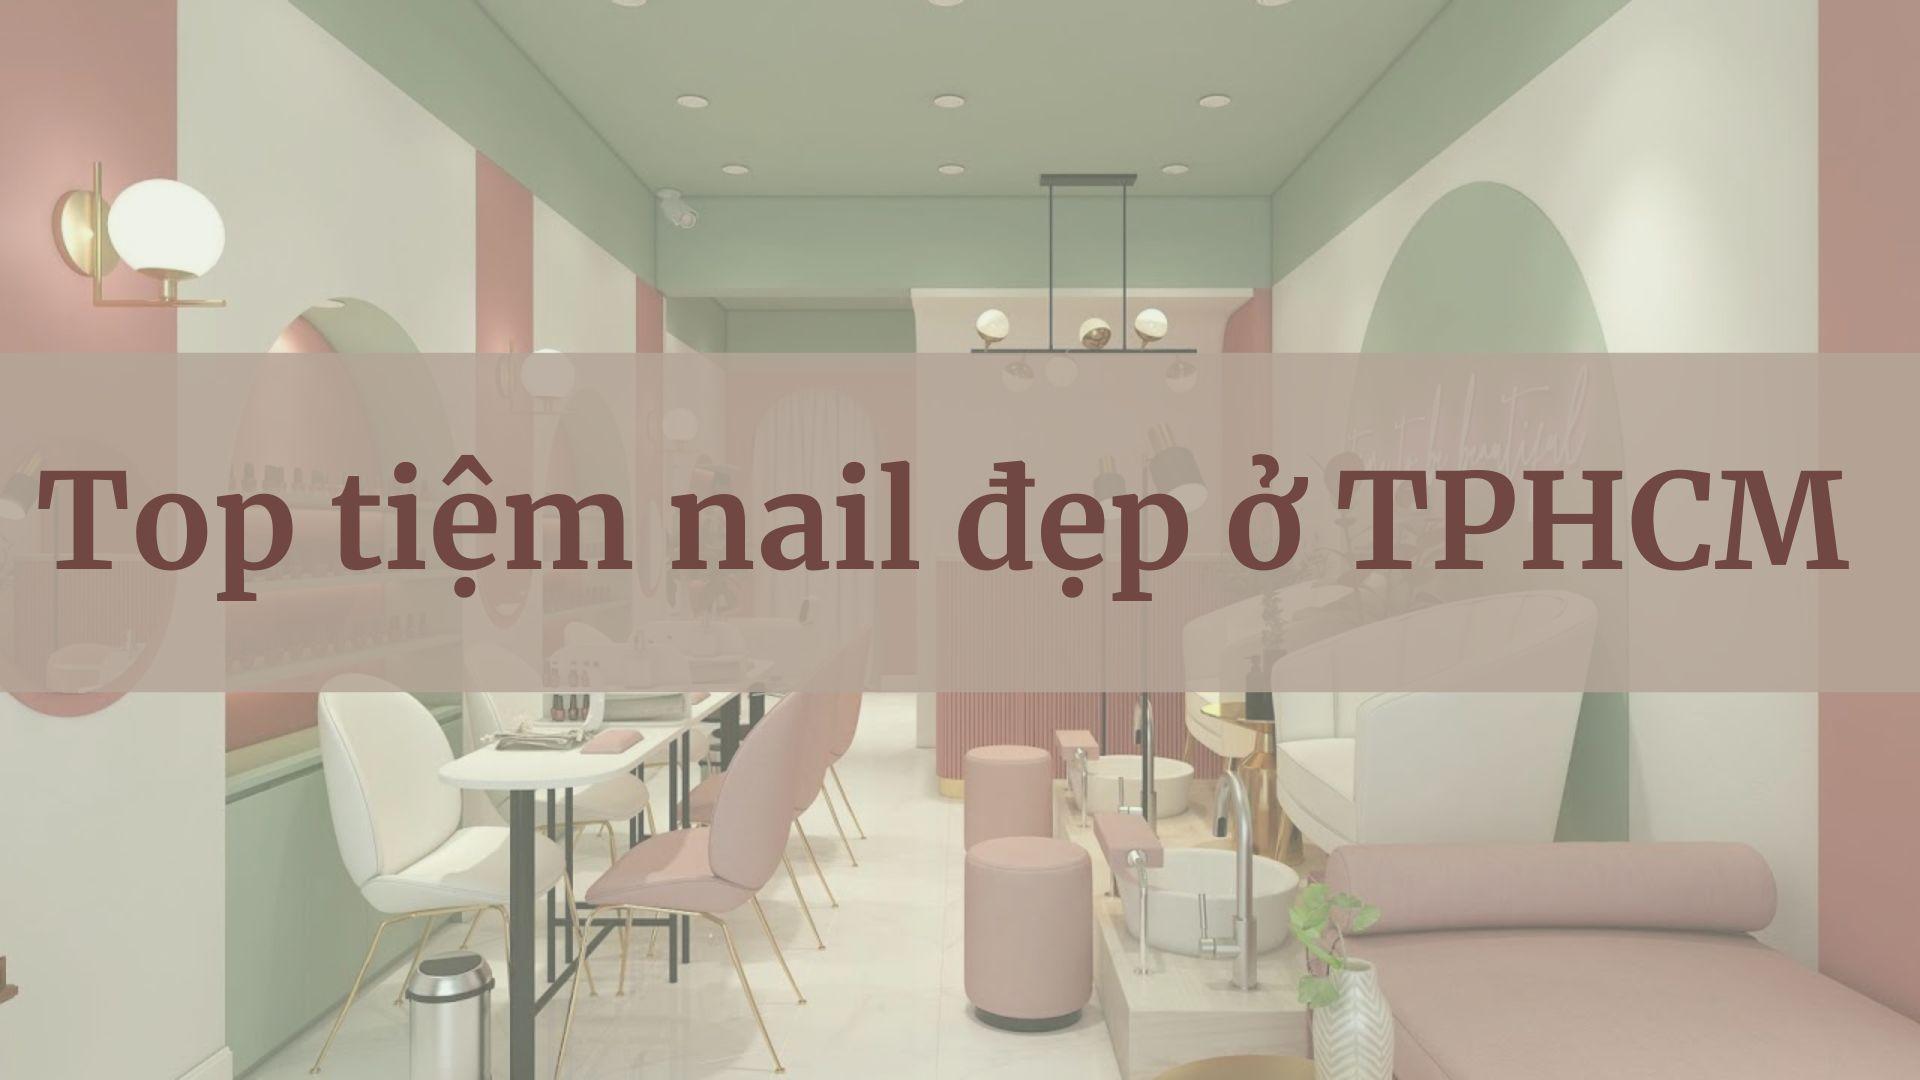 Không còn phải đi tìm kiếm, bạn sẽ tìm thấy những tiệm làm nail cực xinh tại TPHCM ngay tại đây. Với những mẫu nail độc đáo và xinh đẹp, bạn sẽ nhận được sự quan tâm đặc biệt từ những người xung quanh. Hãy đến và trải nghiệm cảm giác thật đặc biệt.